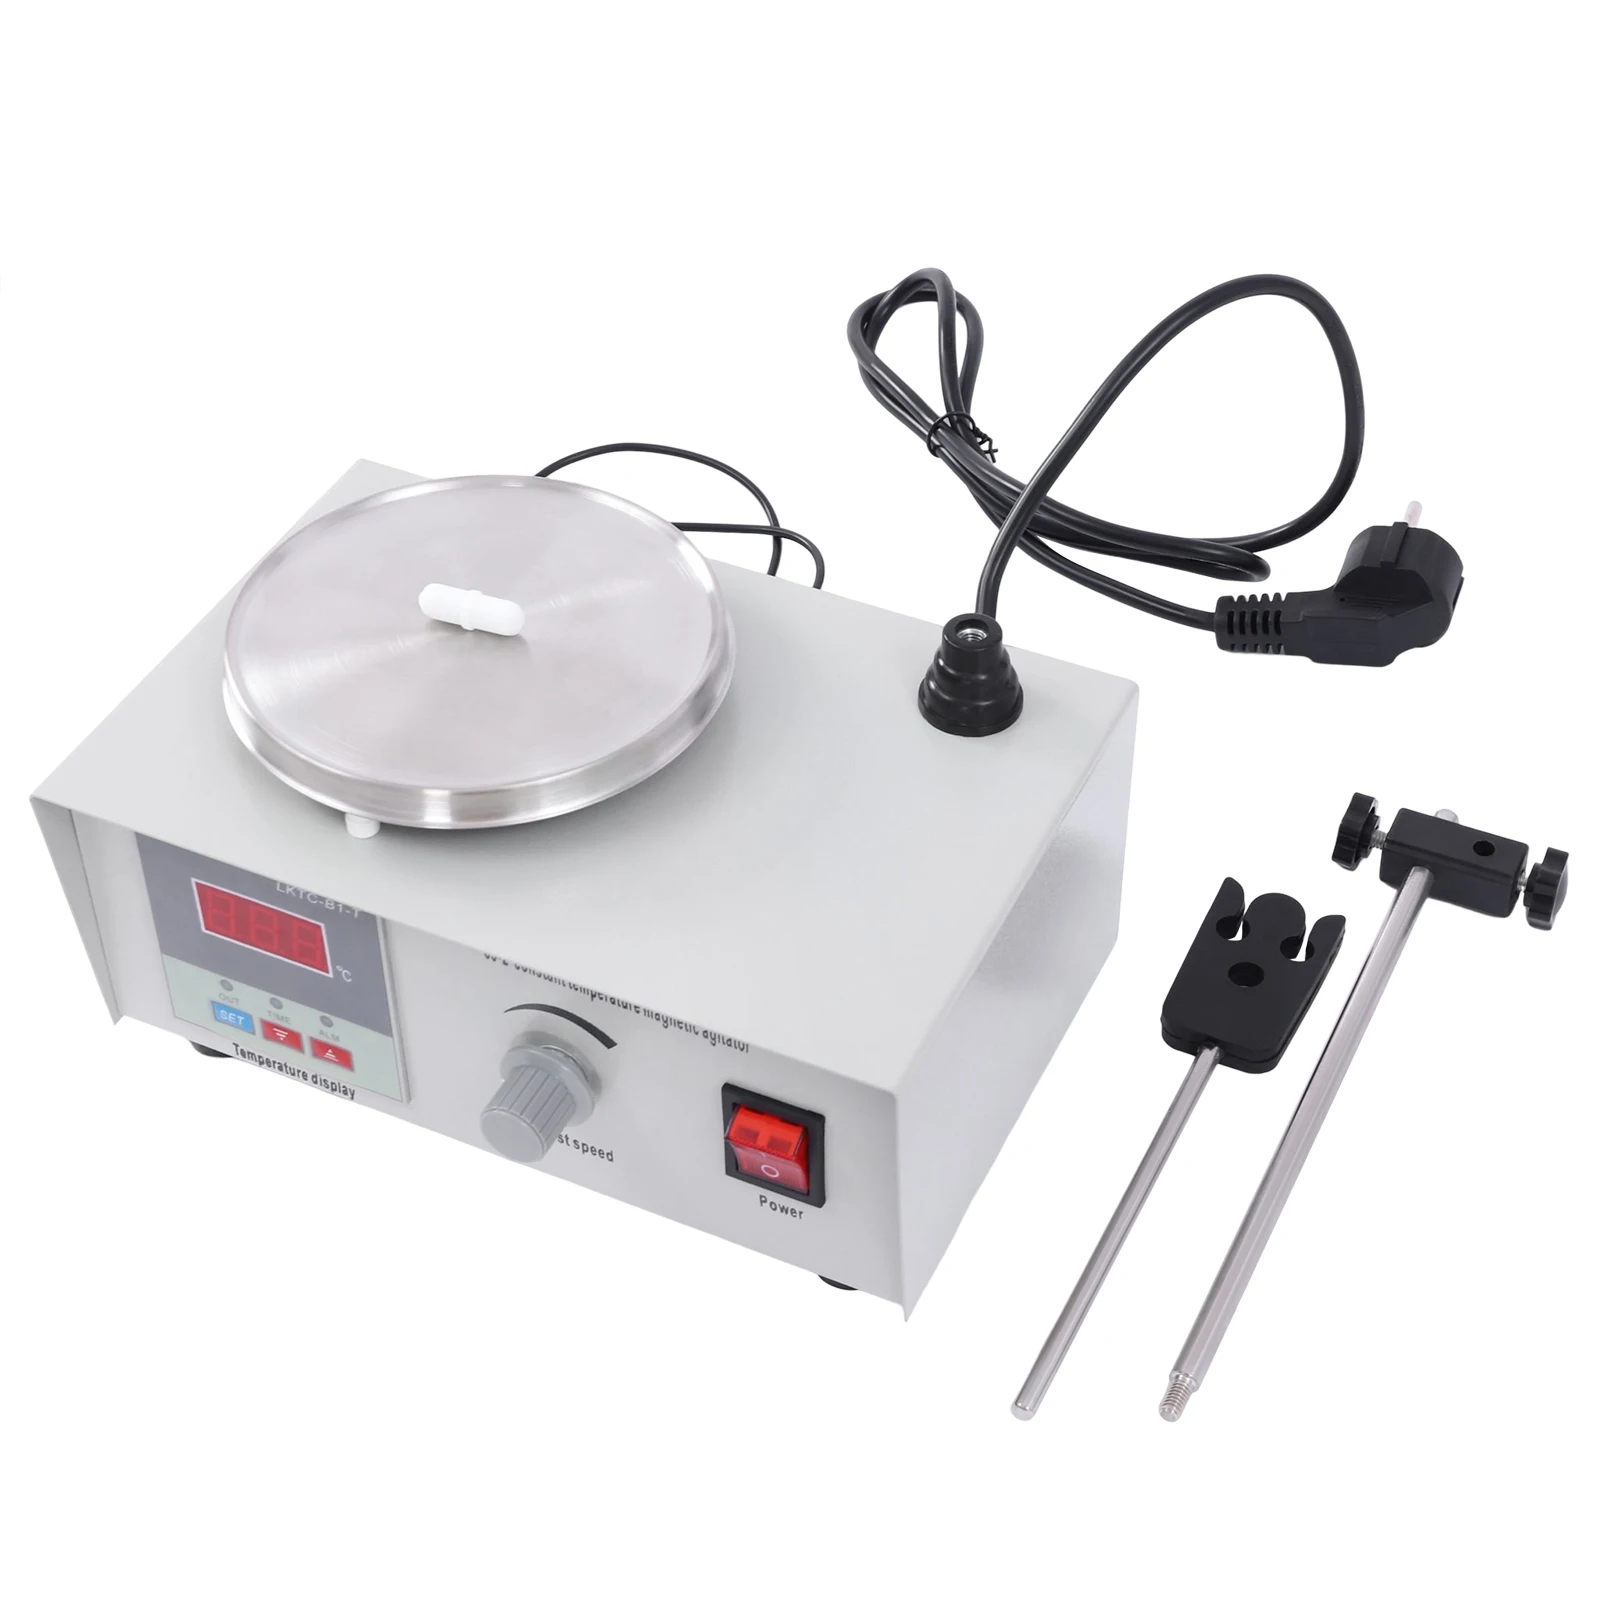 Agitador magnético con pantalla Digital de temperatura, mezclador de placa caliente de 2000ML, 2000 RPM, para laboratorio, incluye barra de agitación A